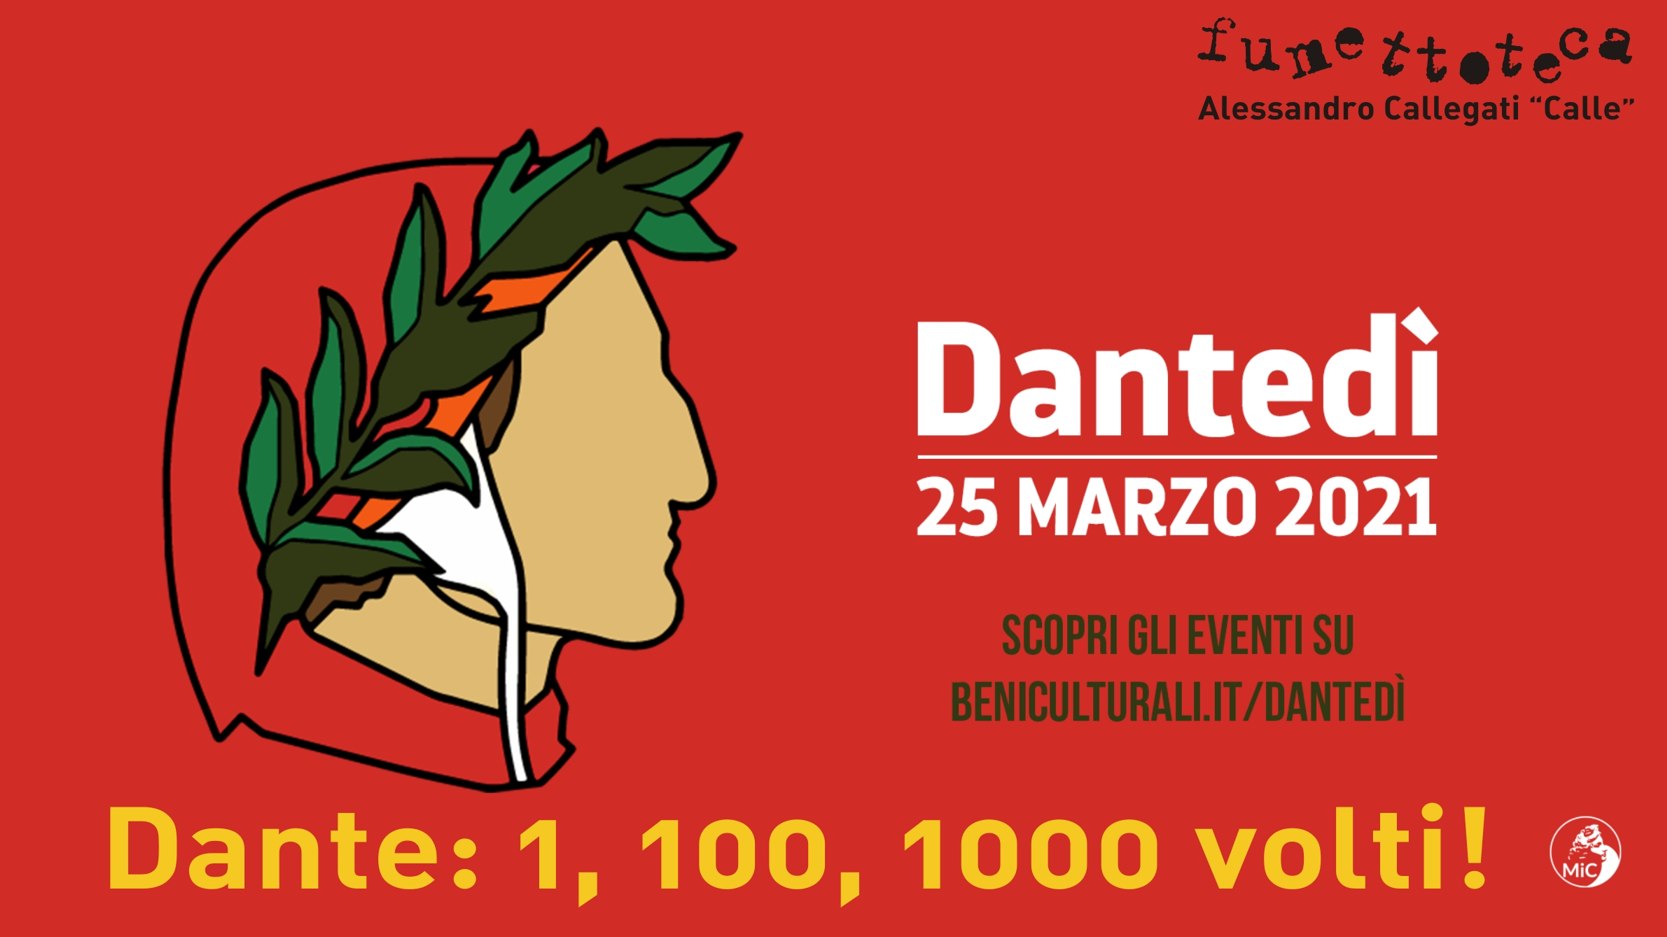 Fumettoteca Regionale Alessandro Callegati "Calle" - DanteDì Di Fumetto - 25/31 Marzo 2021